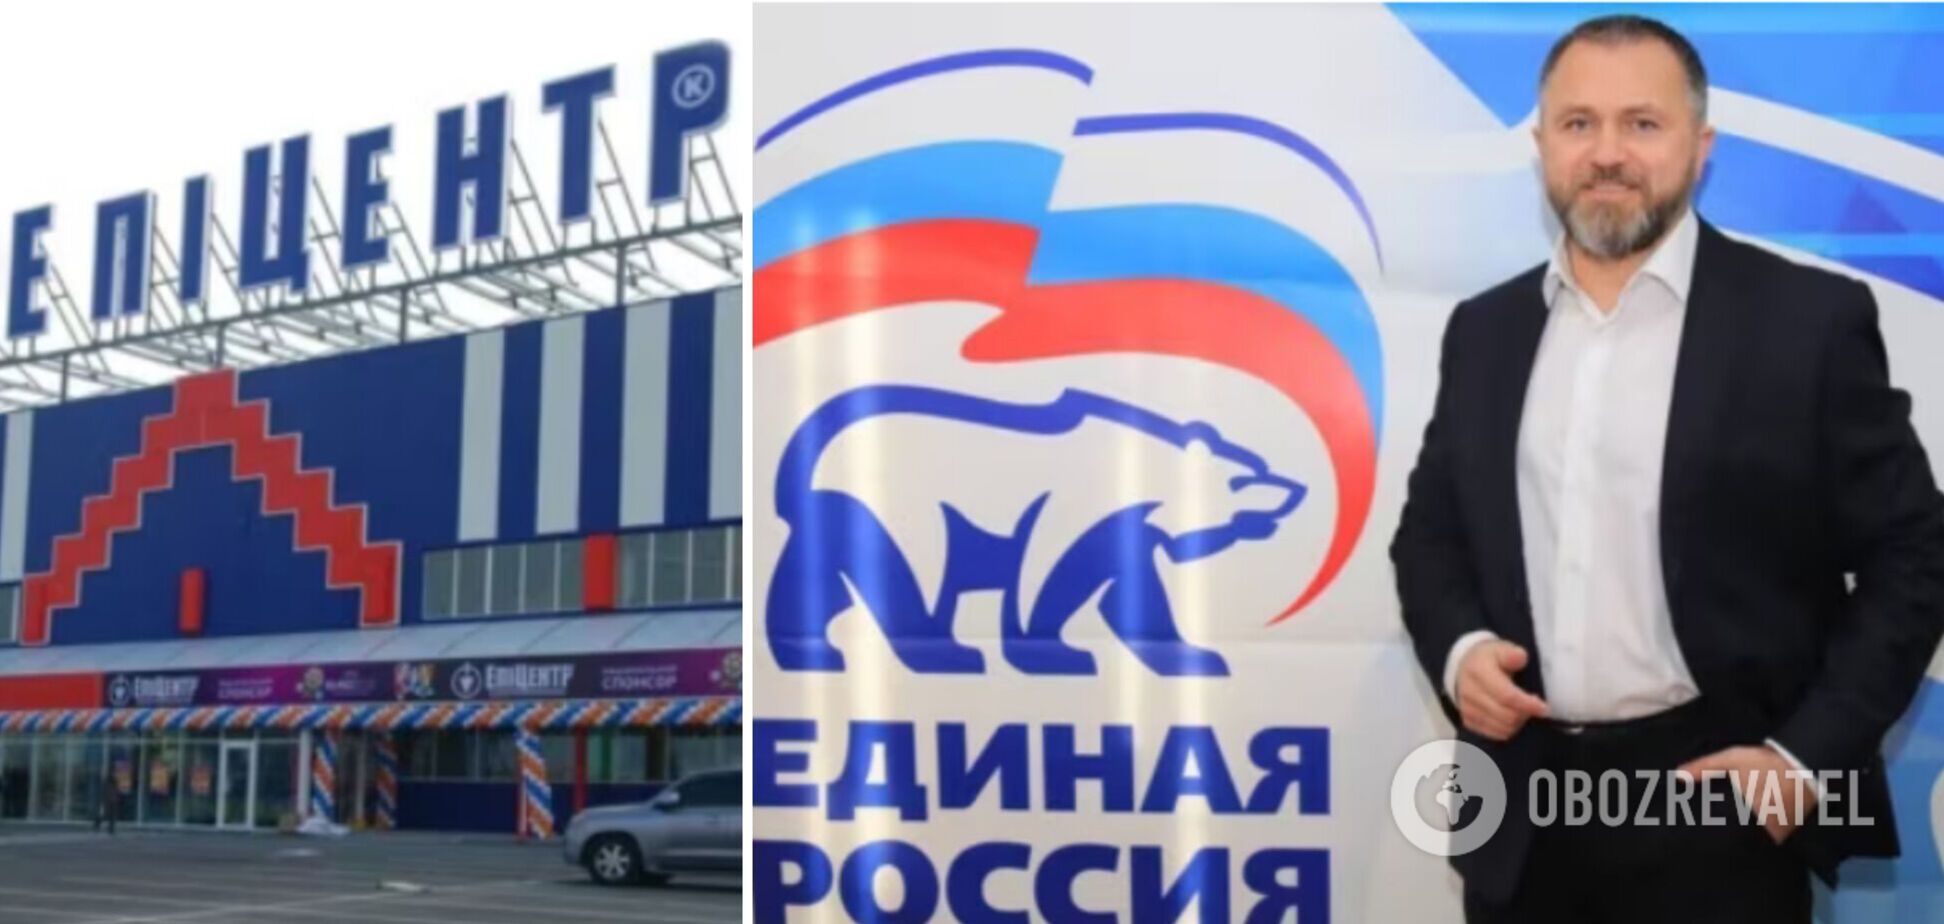 Собственники 'Эпицентра' 8 лет платили зарплату поддерживающему Путина 'управителю' бизнеса на оккупированной Донеччине